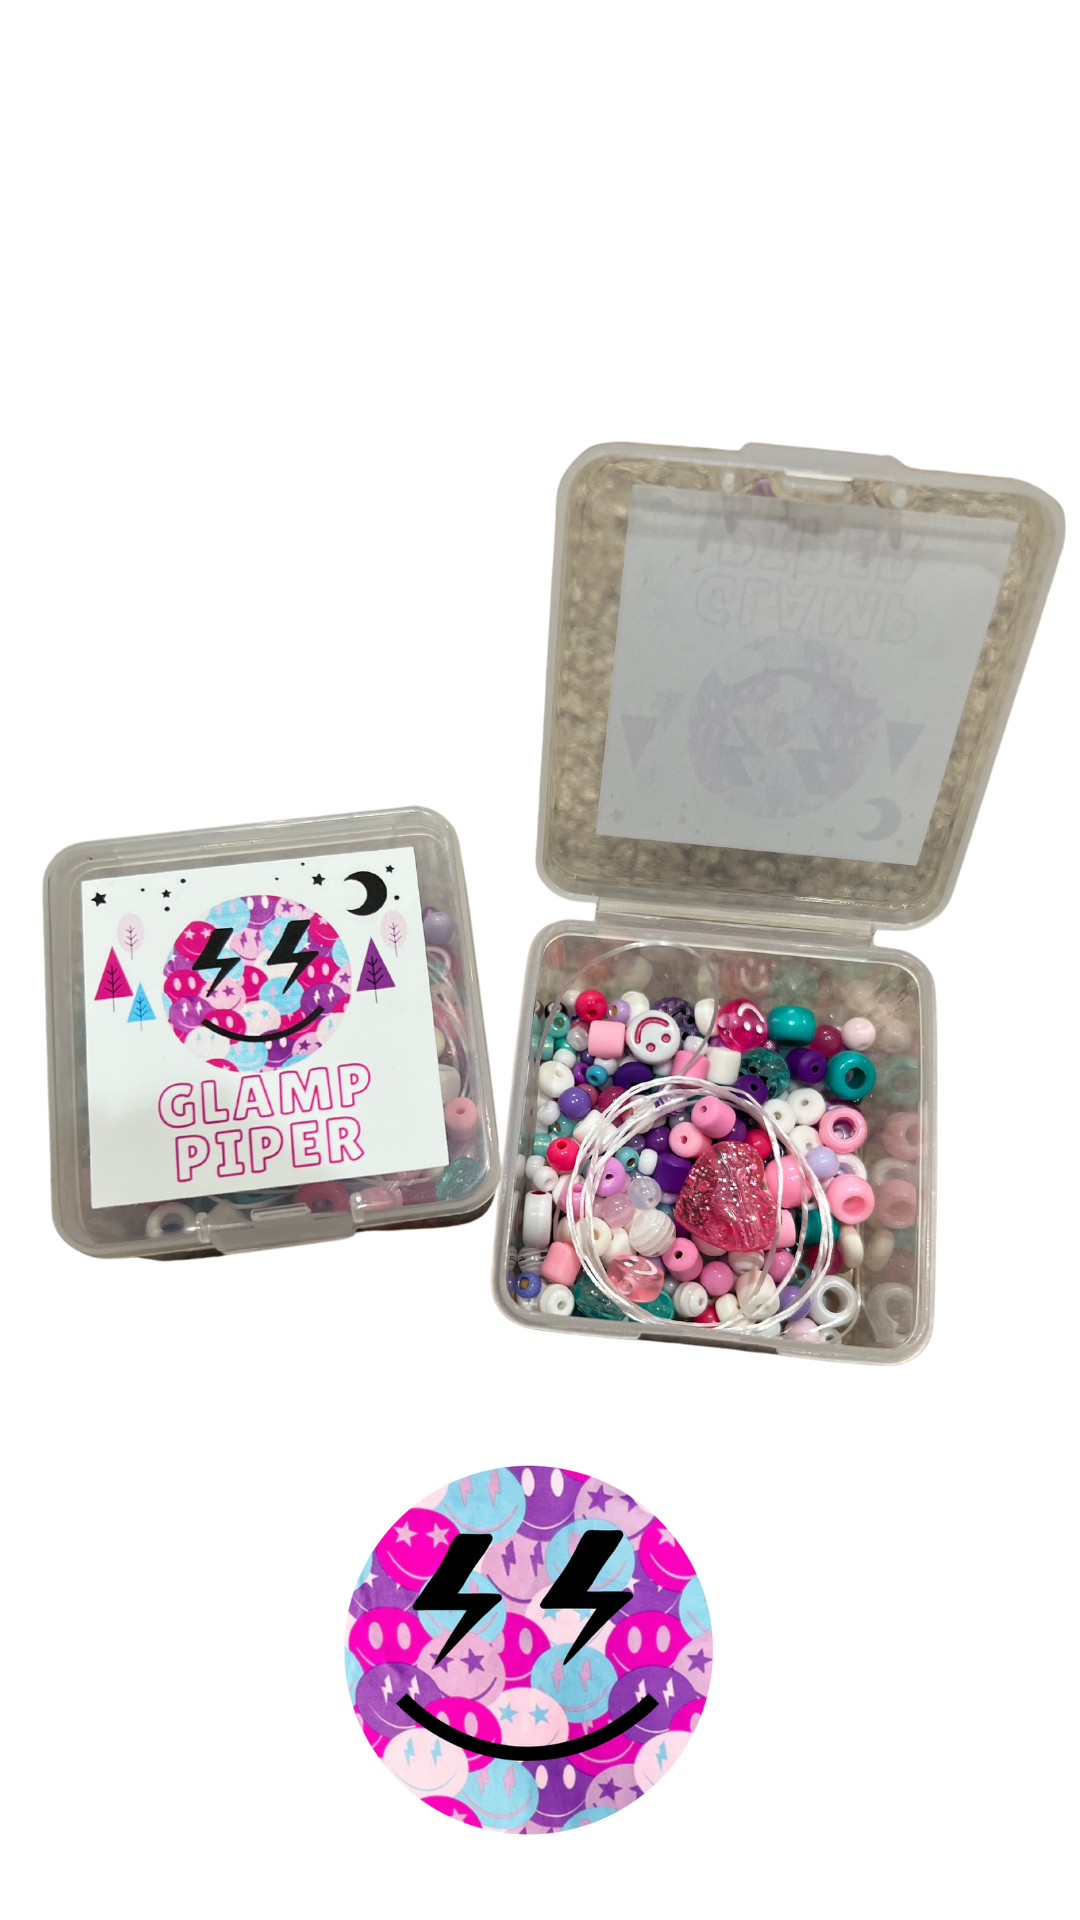 MINI Bead Kits – Just Bead It By Rachel, LLC